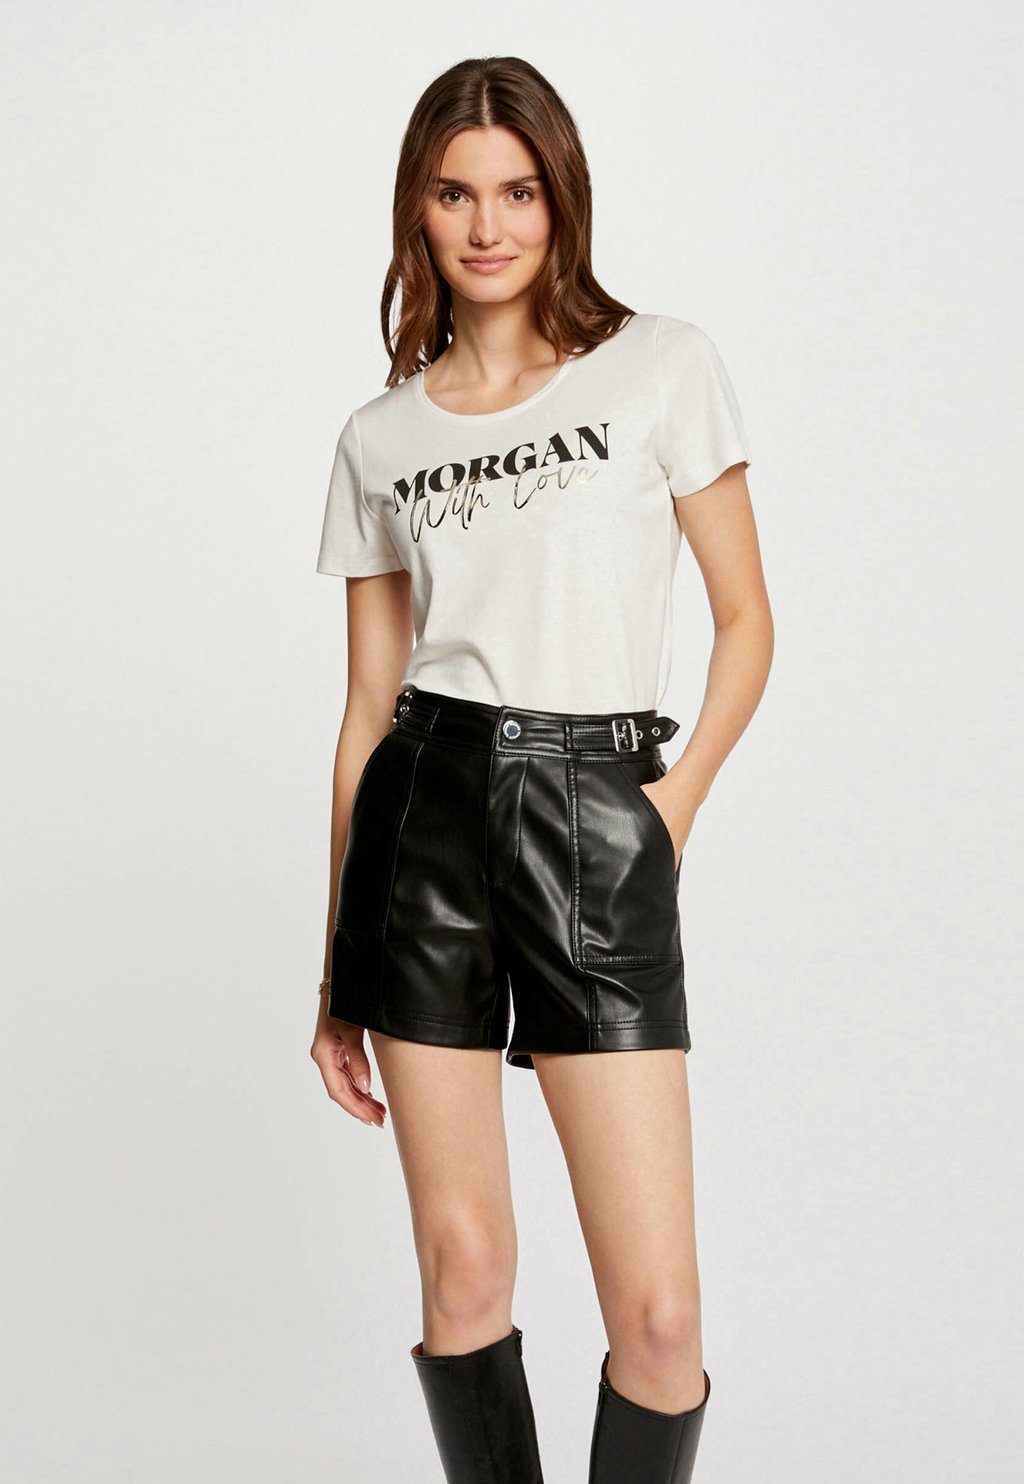 Футболка с принтом SHORT-SLEEVED Morgan, бежевый футболка базовая short sleeved morgan цвет black